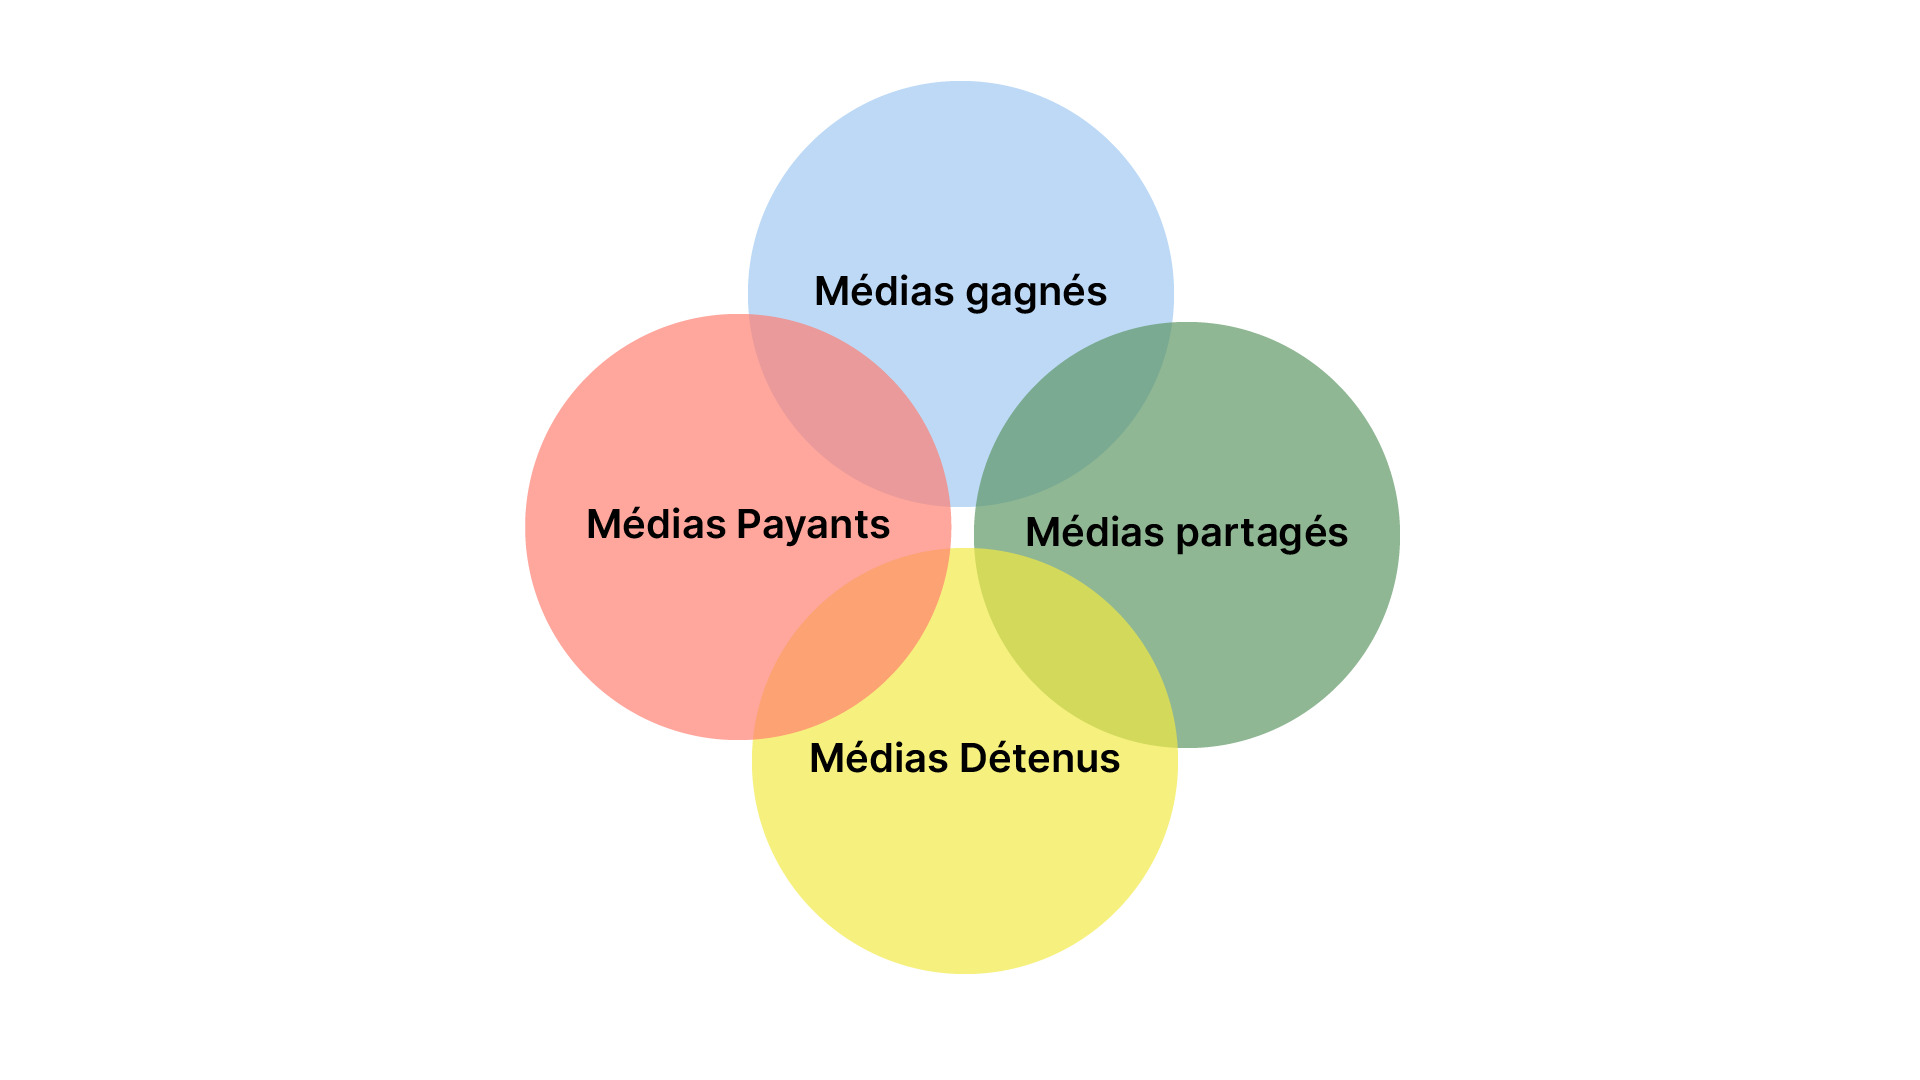 Le modèle PESO représenté par 4 cercles : médias payants, médias gagnés, médias partagés, médias détenus.